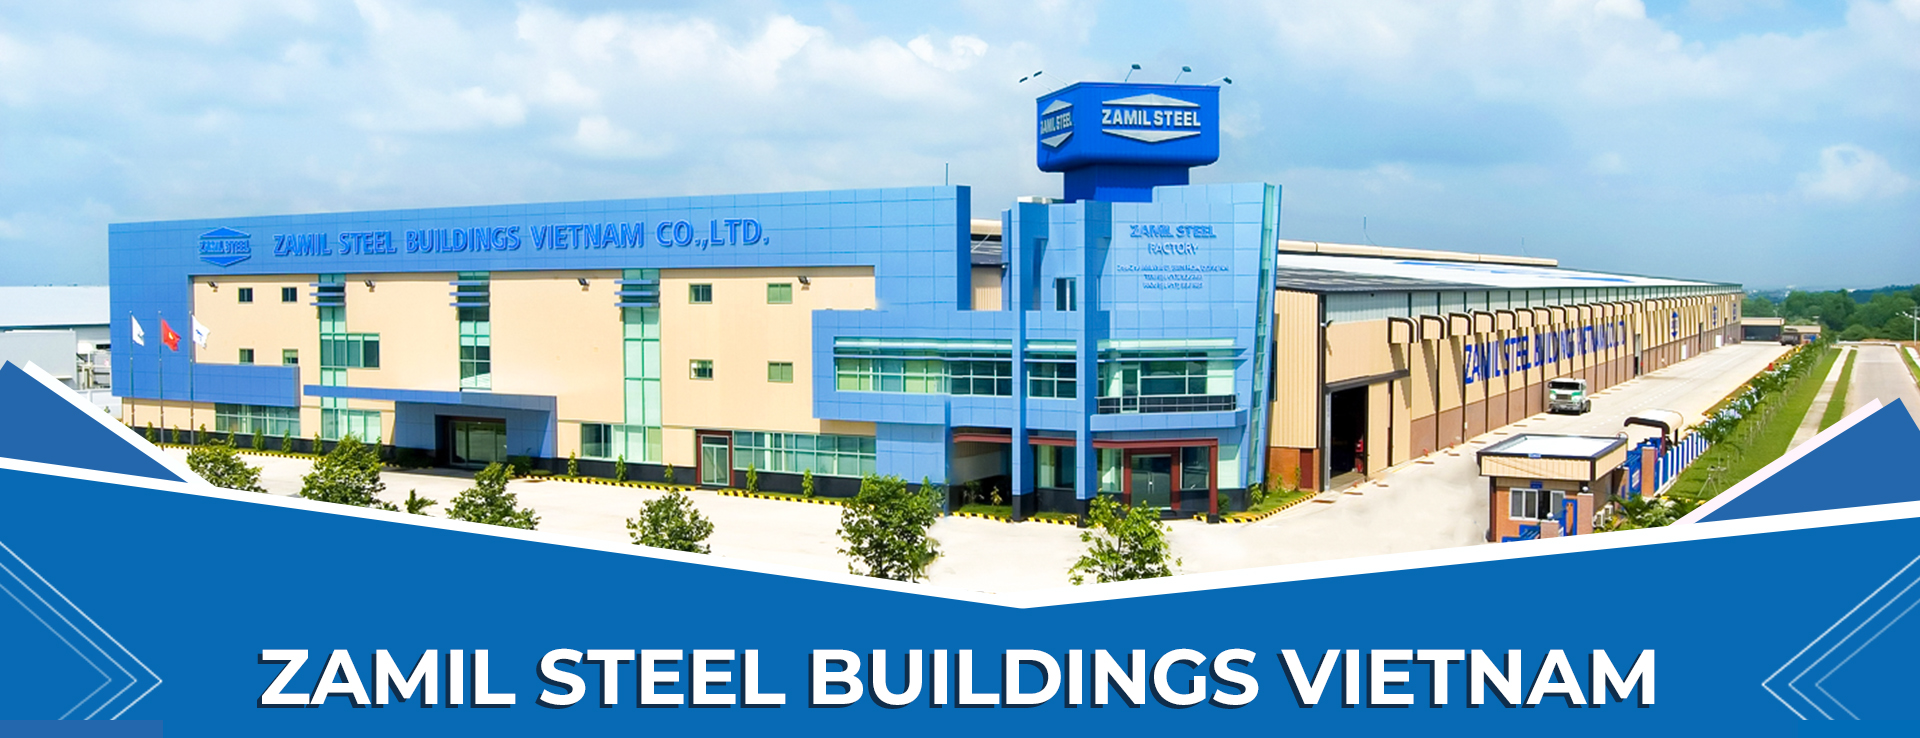 Nhà thép tiền chế Zamil Steel Buildings Vietnam: Với những thiết kế hiện đại và độc đáo, sản phẩm của Zamil Steel Buildings Vietnam đã làm hài lòng các nhà đầu tư khó tính nhất. Nhà thép tiền chế Zamil không chỉ tối ưu về chi phí, mà còn đảm bảo tính an toàn và chống chịu được mọi thời tiết. Quý khách hàng có nhu cầu xây dựng nhà thép dự án hãy tìm đến Zamil Steel Buildings Vietnam để được tư vấn miễn phí.